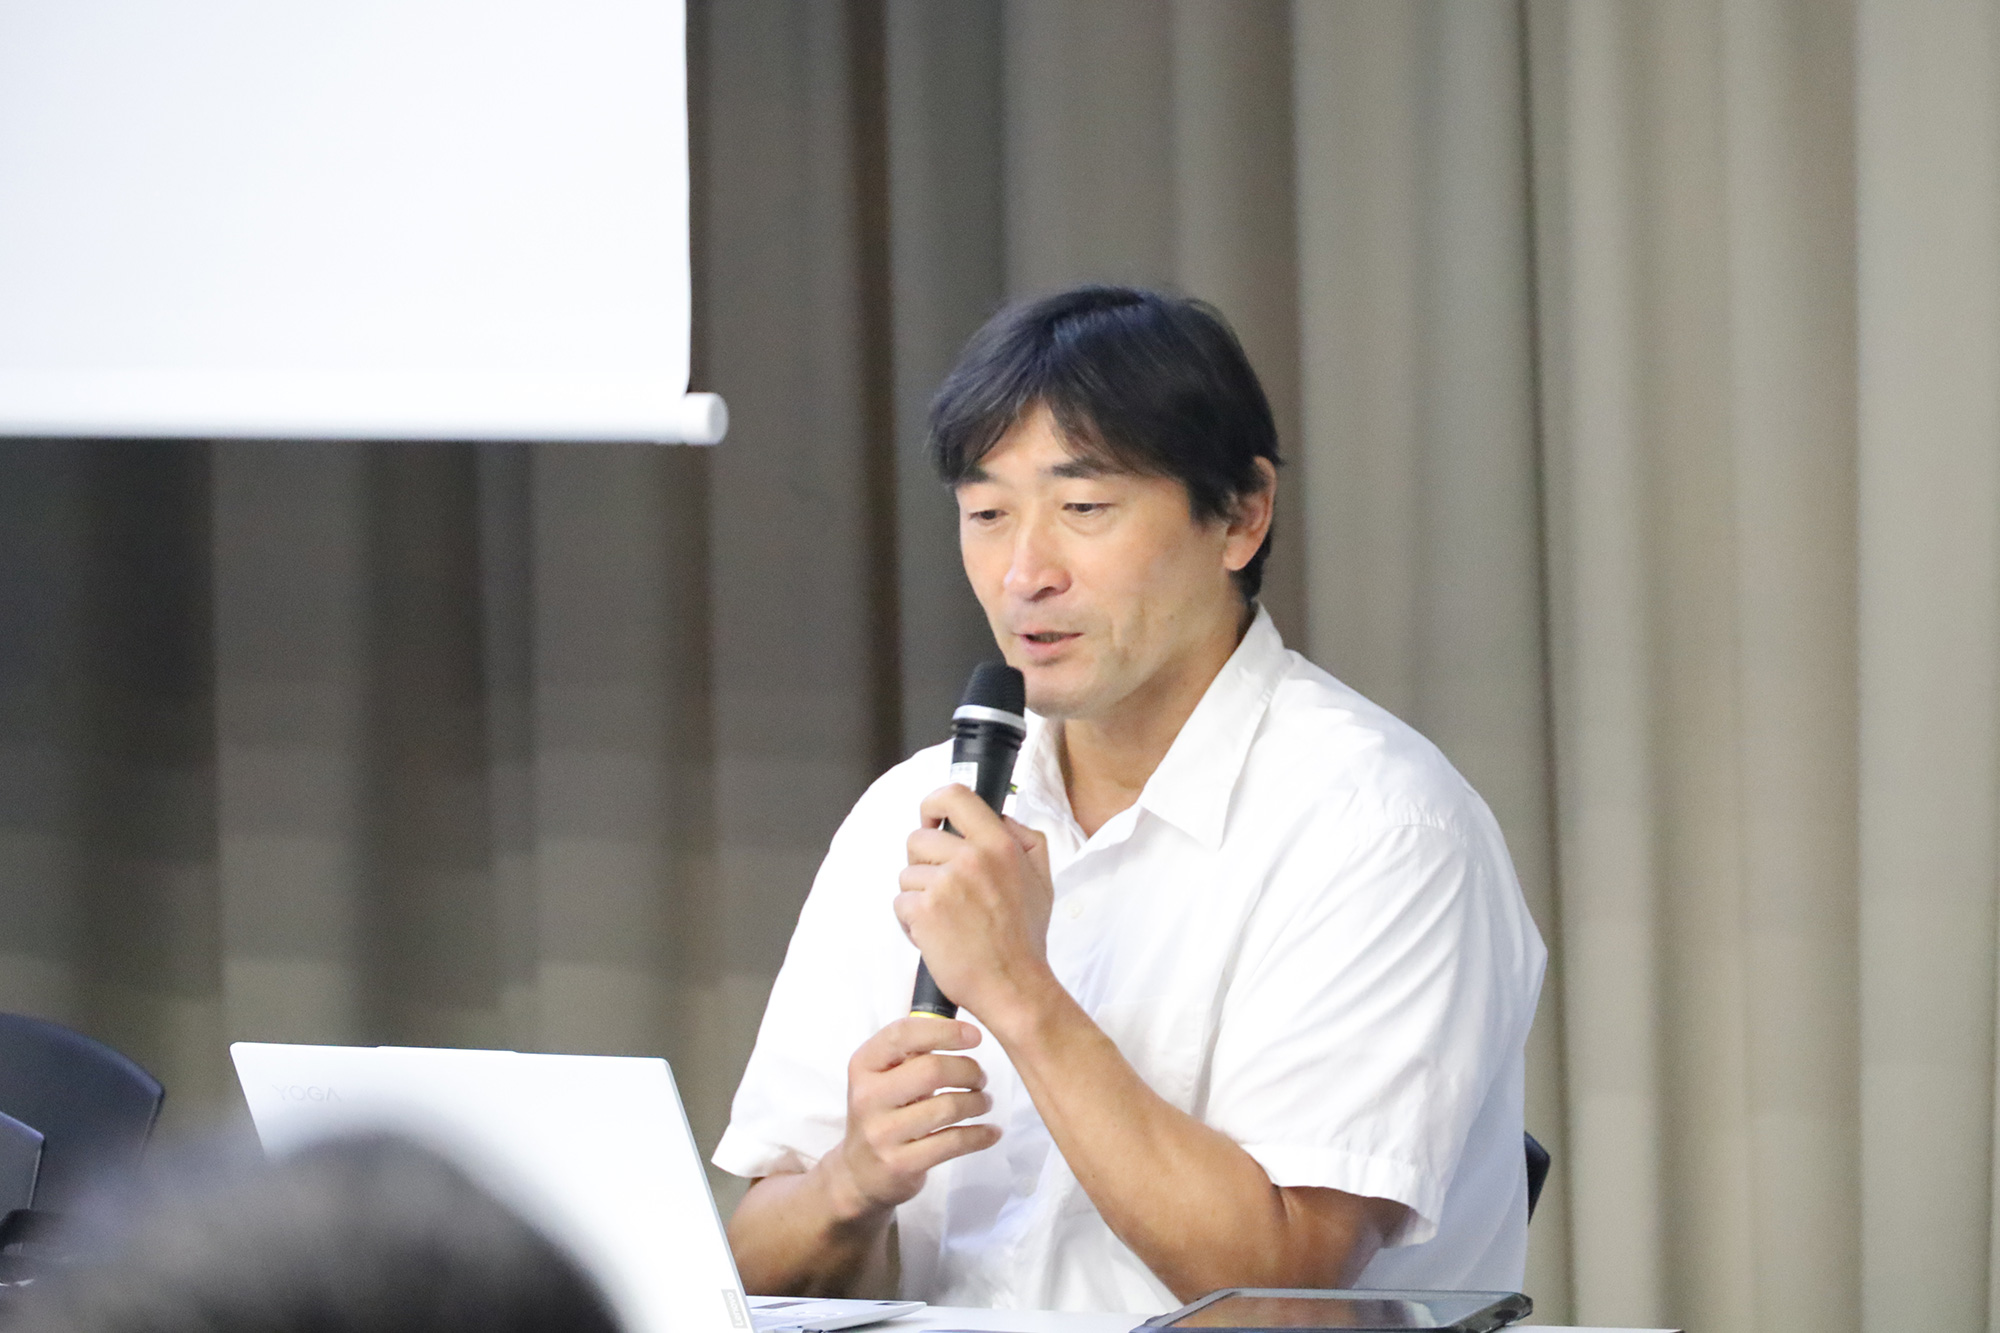 「『フェアプレイ』と『勝利の追求』」をテーマに模擬授業をする森田啓教授